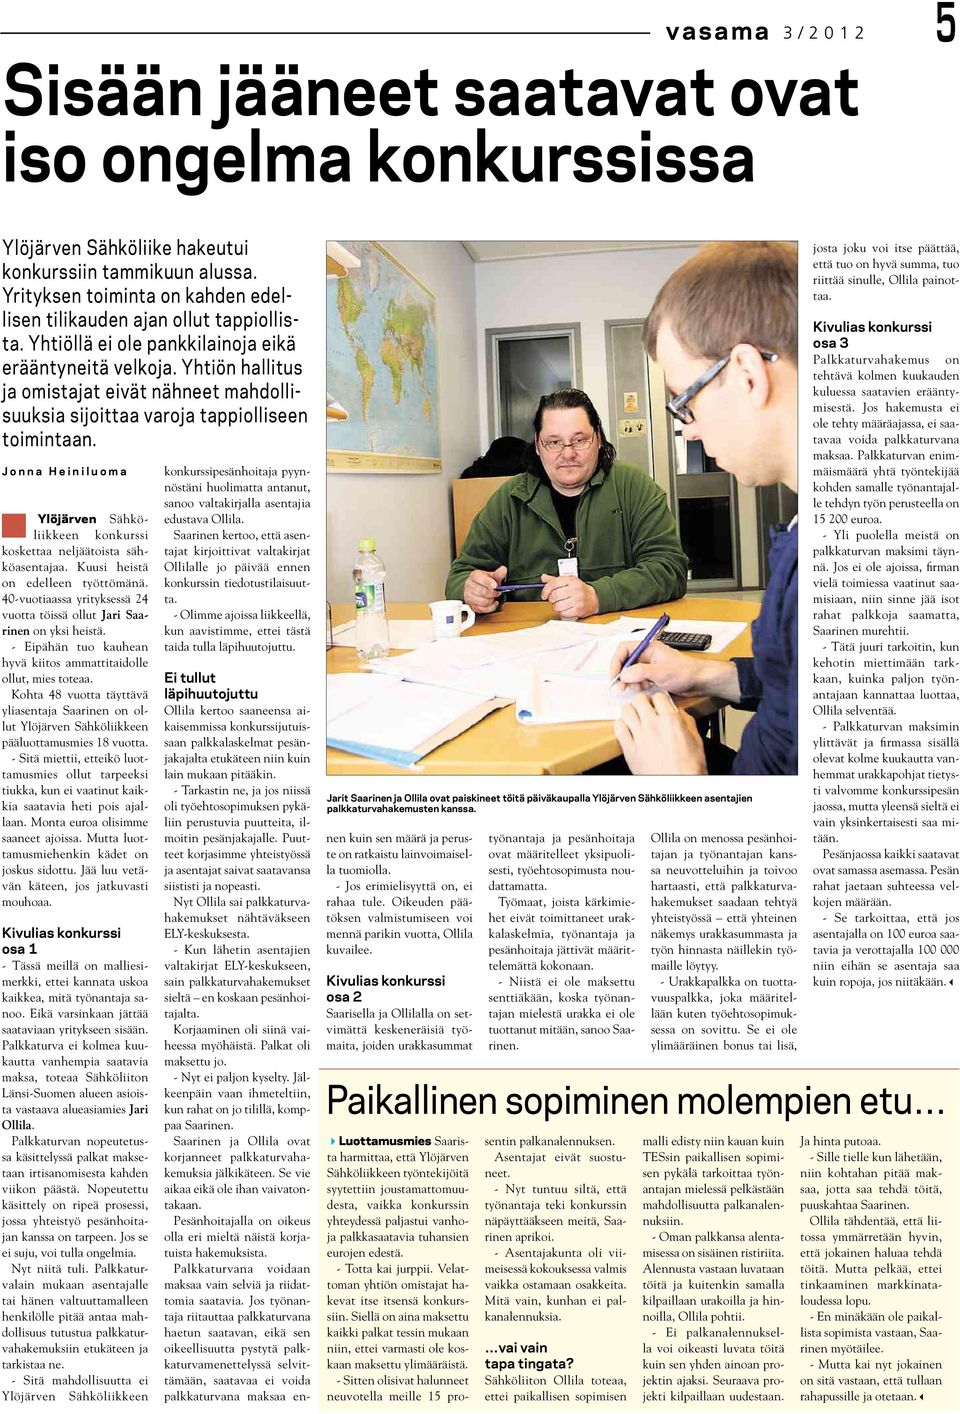 Yhtiön hallitus ja omistajat eivät nähneet mahdollisuuksia sijoittaa varoja tappiolliseen toimintaan. Jonna Heiniluoma Ylöjärven Sähköliikkeen konkurssi koskettaa neljäätoista sähköasentajaa.